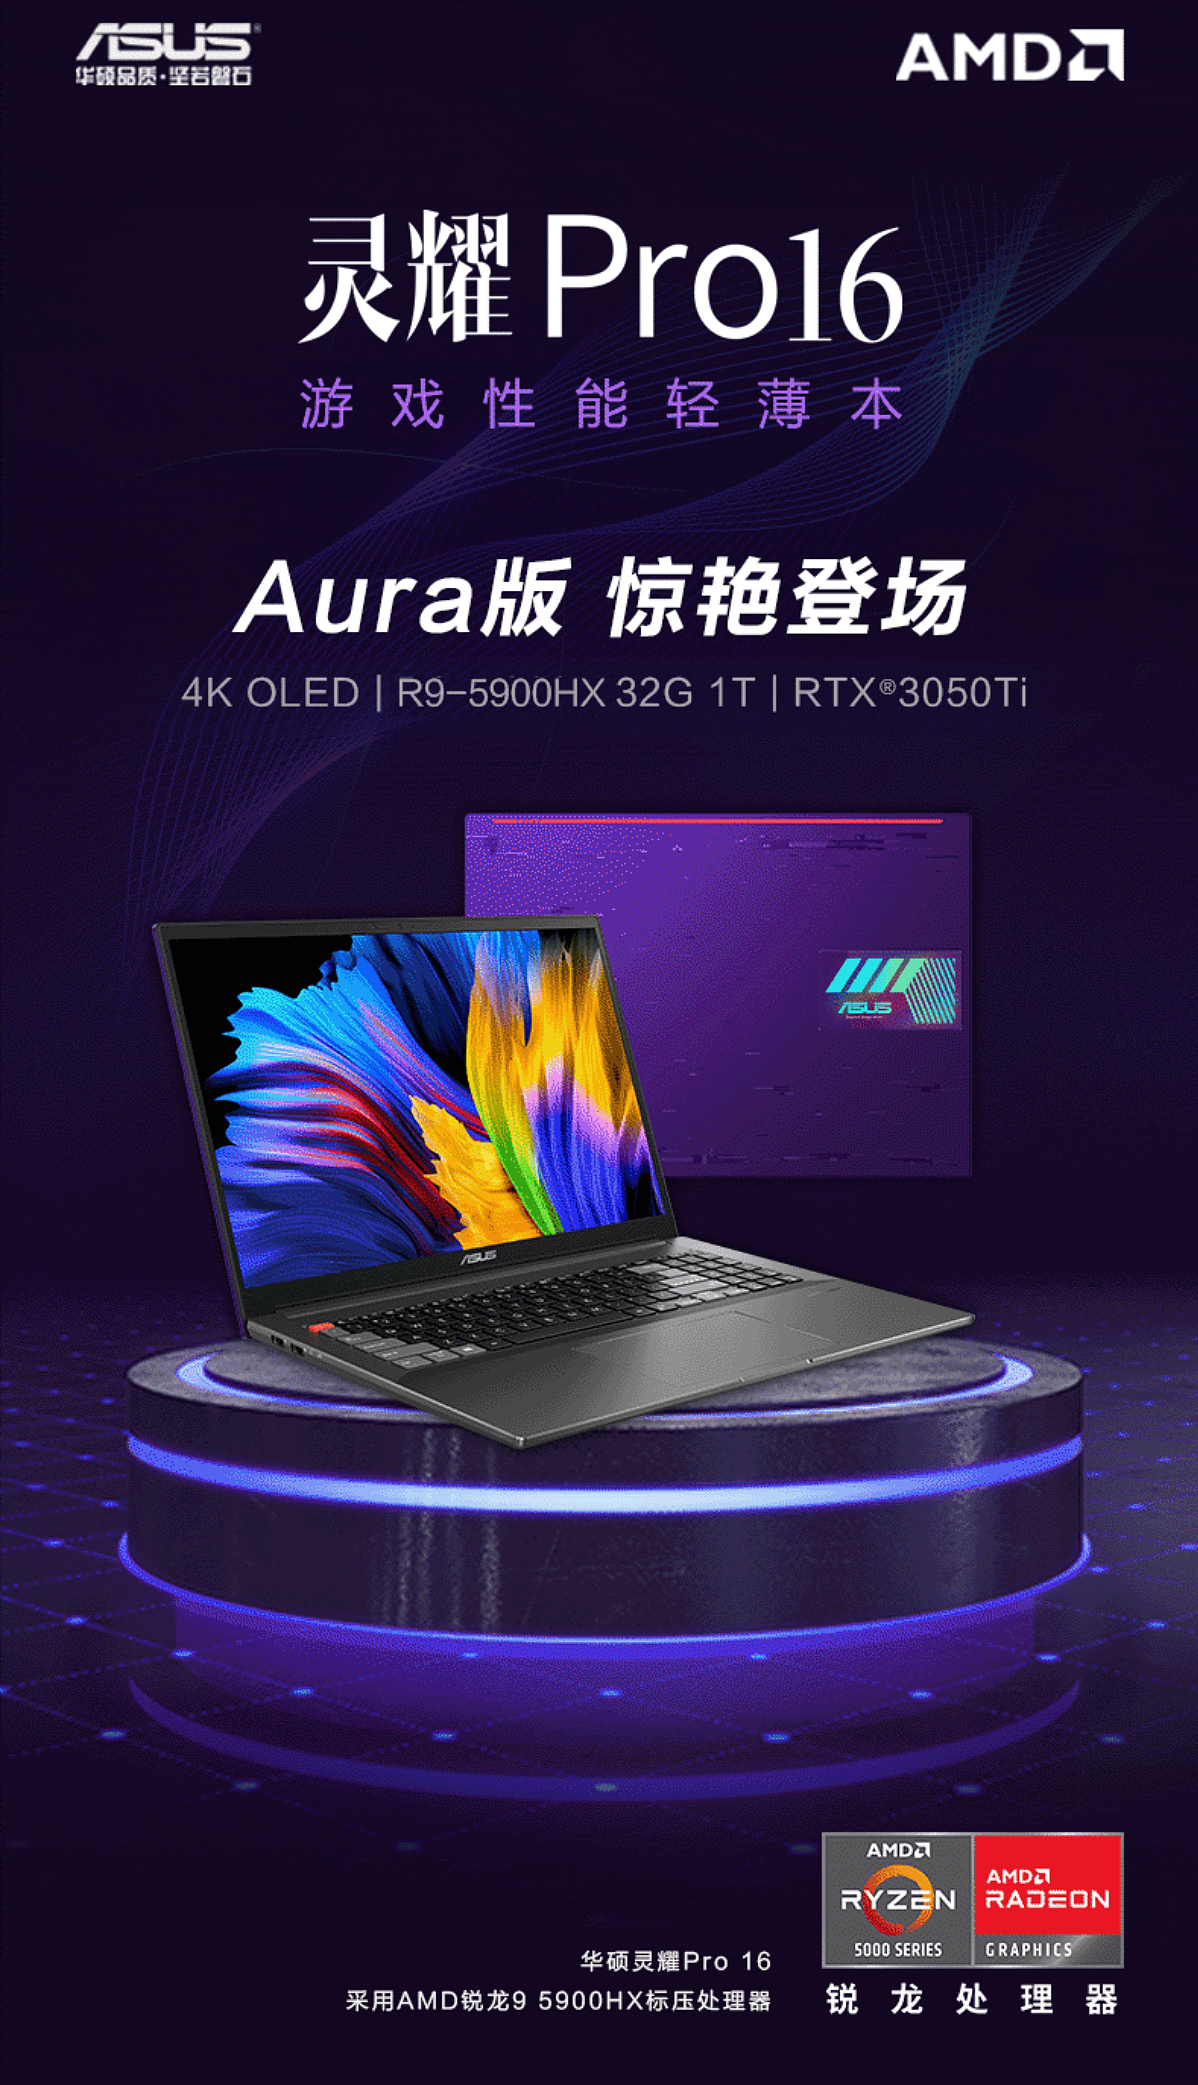 首发价 10499 元，华硕灵耀 Pro16 Aura 开启预售：4K OLED 屏，RTX 3050Ti 显卡 - 1